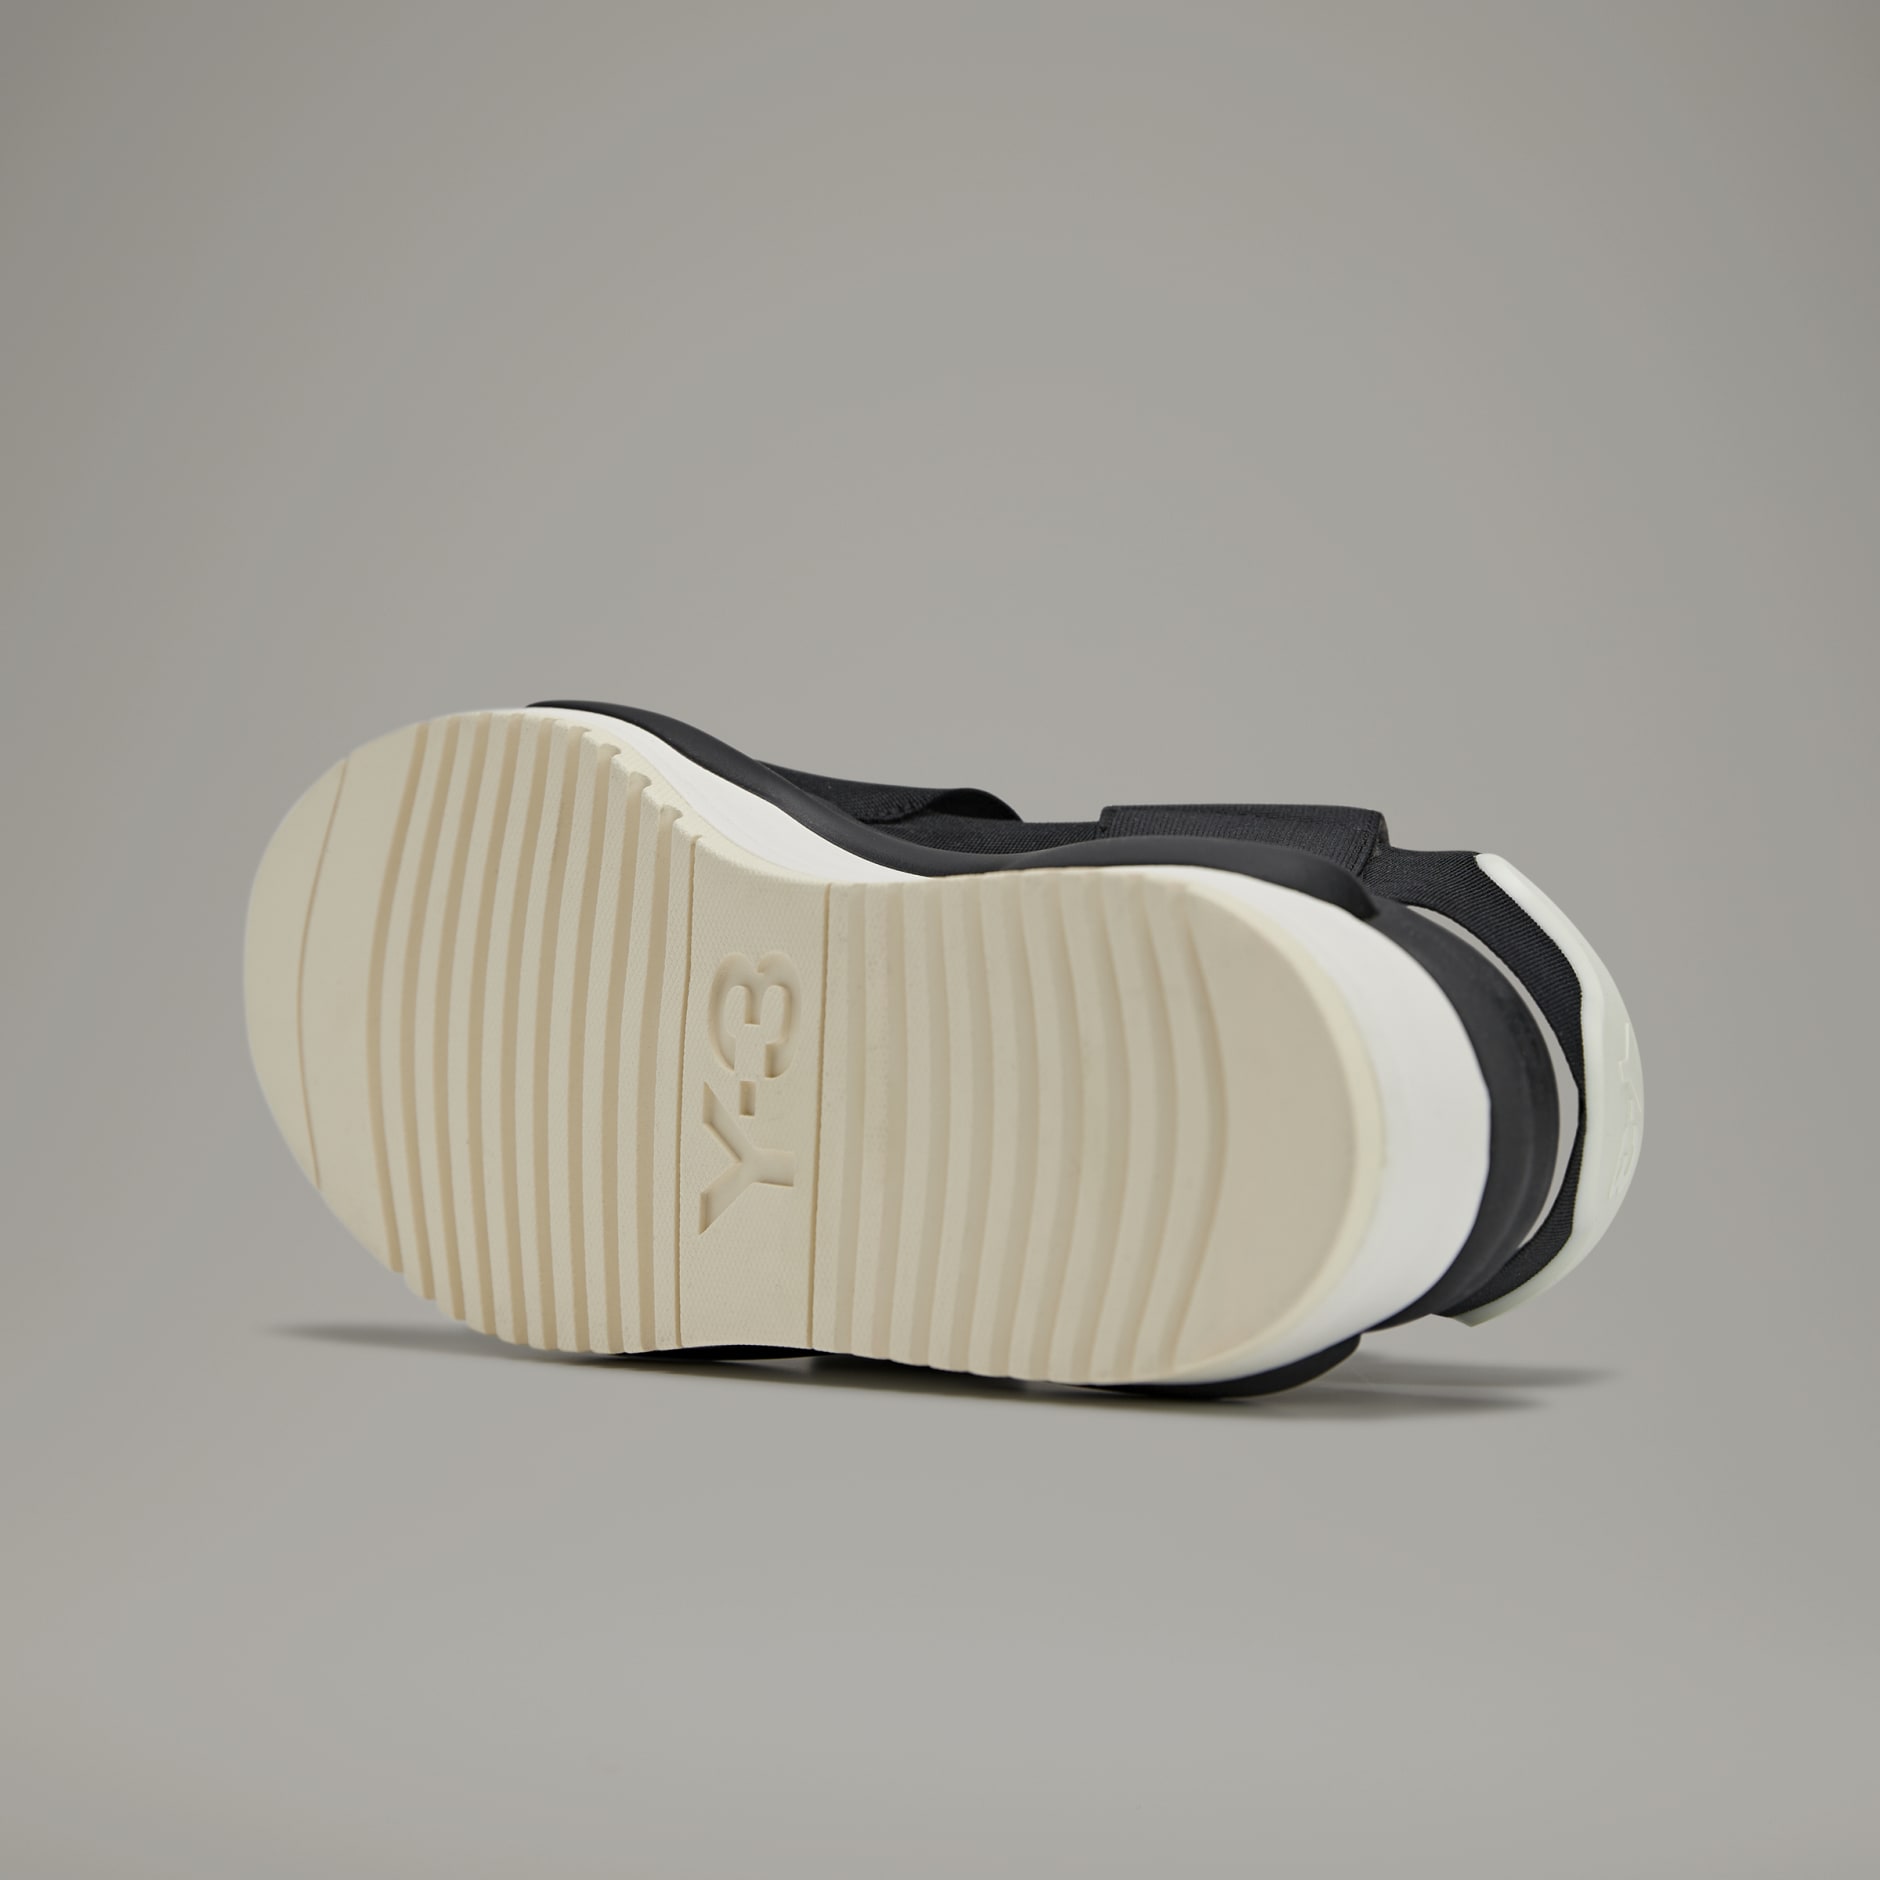 adidas Y-3 Hokori Sandals - Black | adidas SA